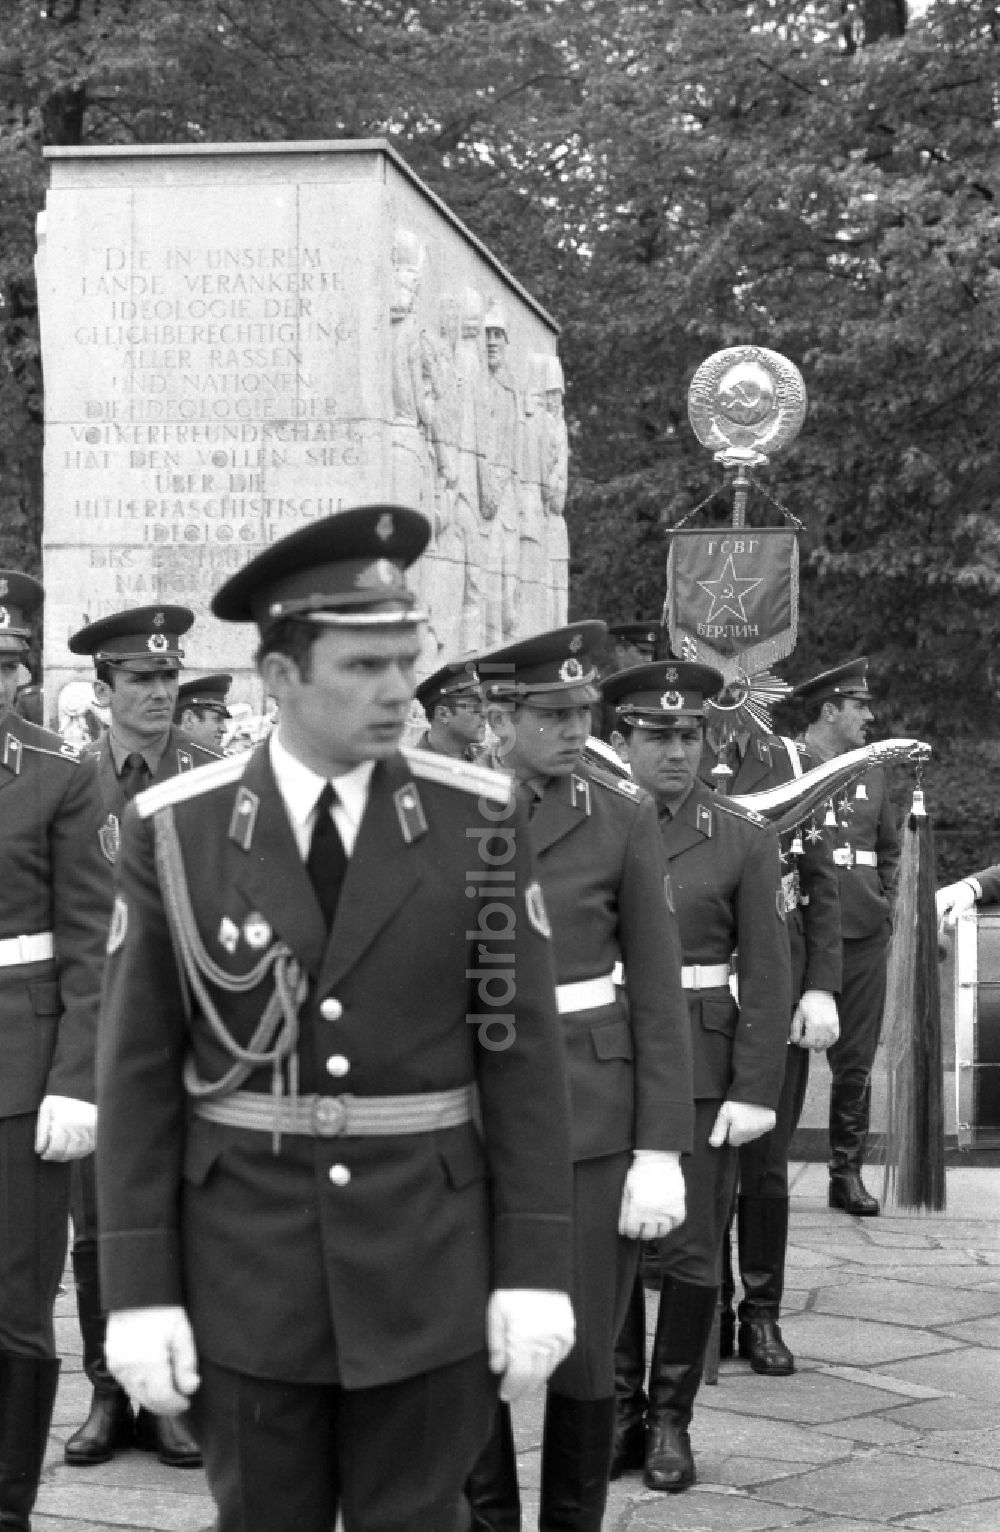 DDR-Fotoarchiv: Berlin - Marschformation von Soldaten anläßlich einer Kranzniederlegung am Ehrenmal für die gefallenen sowjetischen Soldaten in Berlin in der DDR